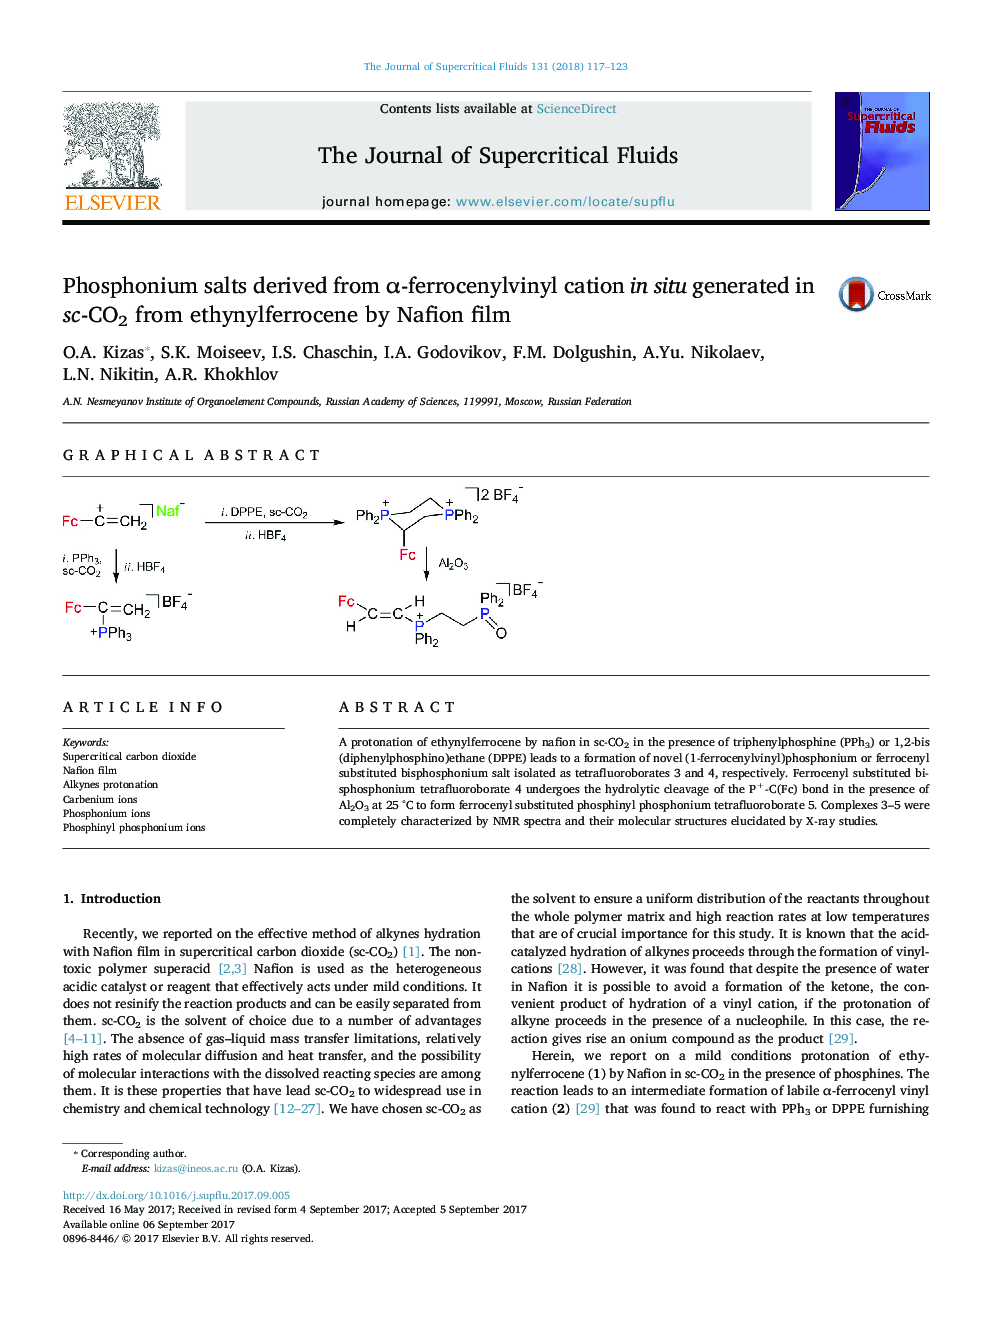 نمک های فسفونیوم مشتق از کاتیون ²-ferrocenylvinyl در محل تولید شده در sc-CO2 از ethynylferrocene توسط فیلم Nafion